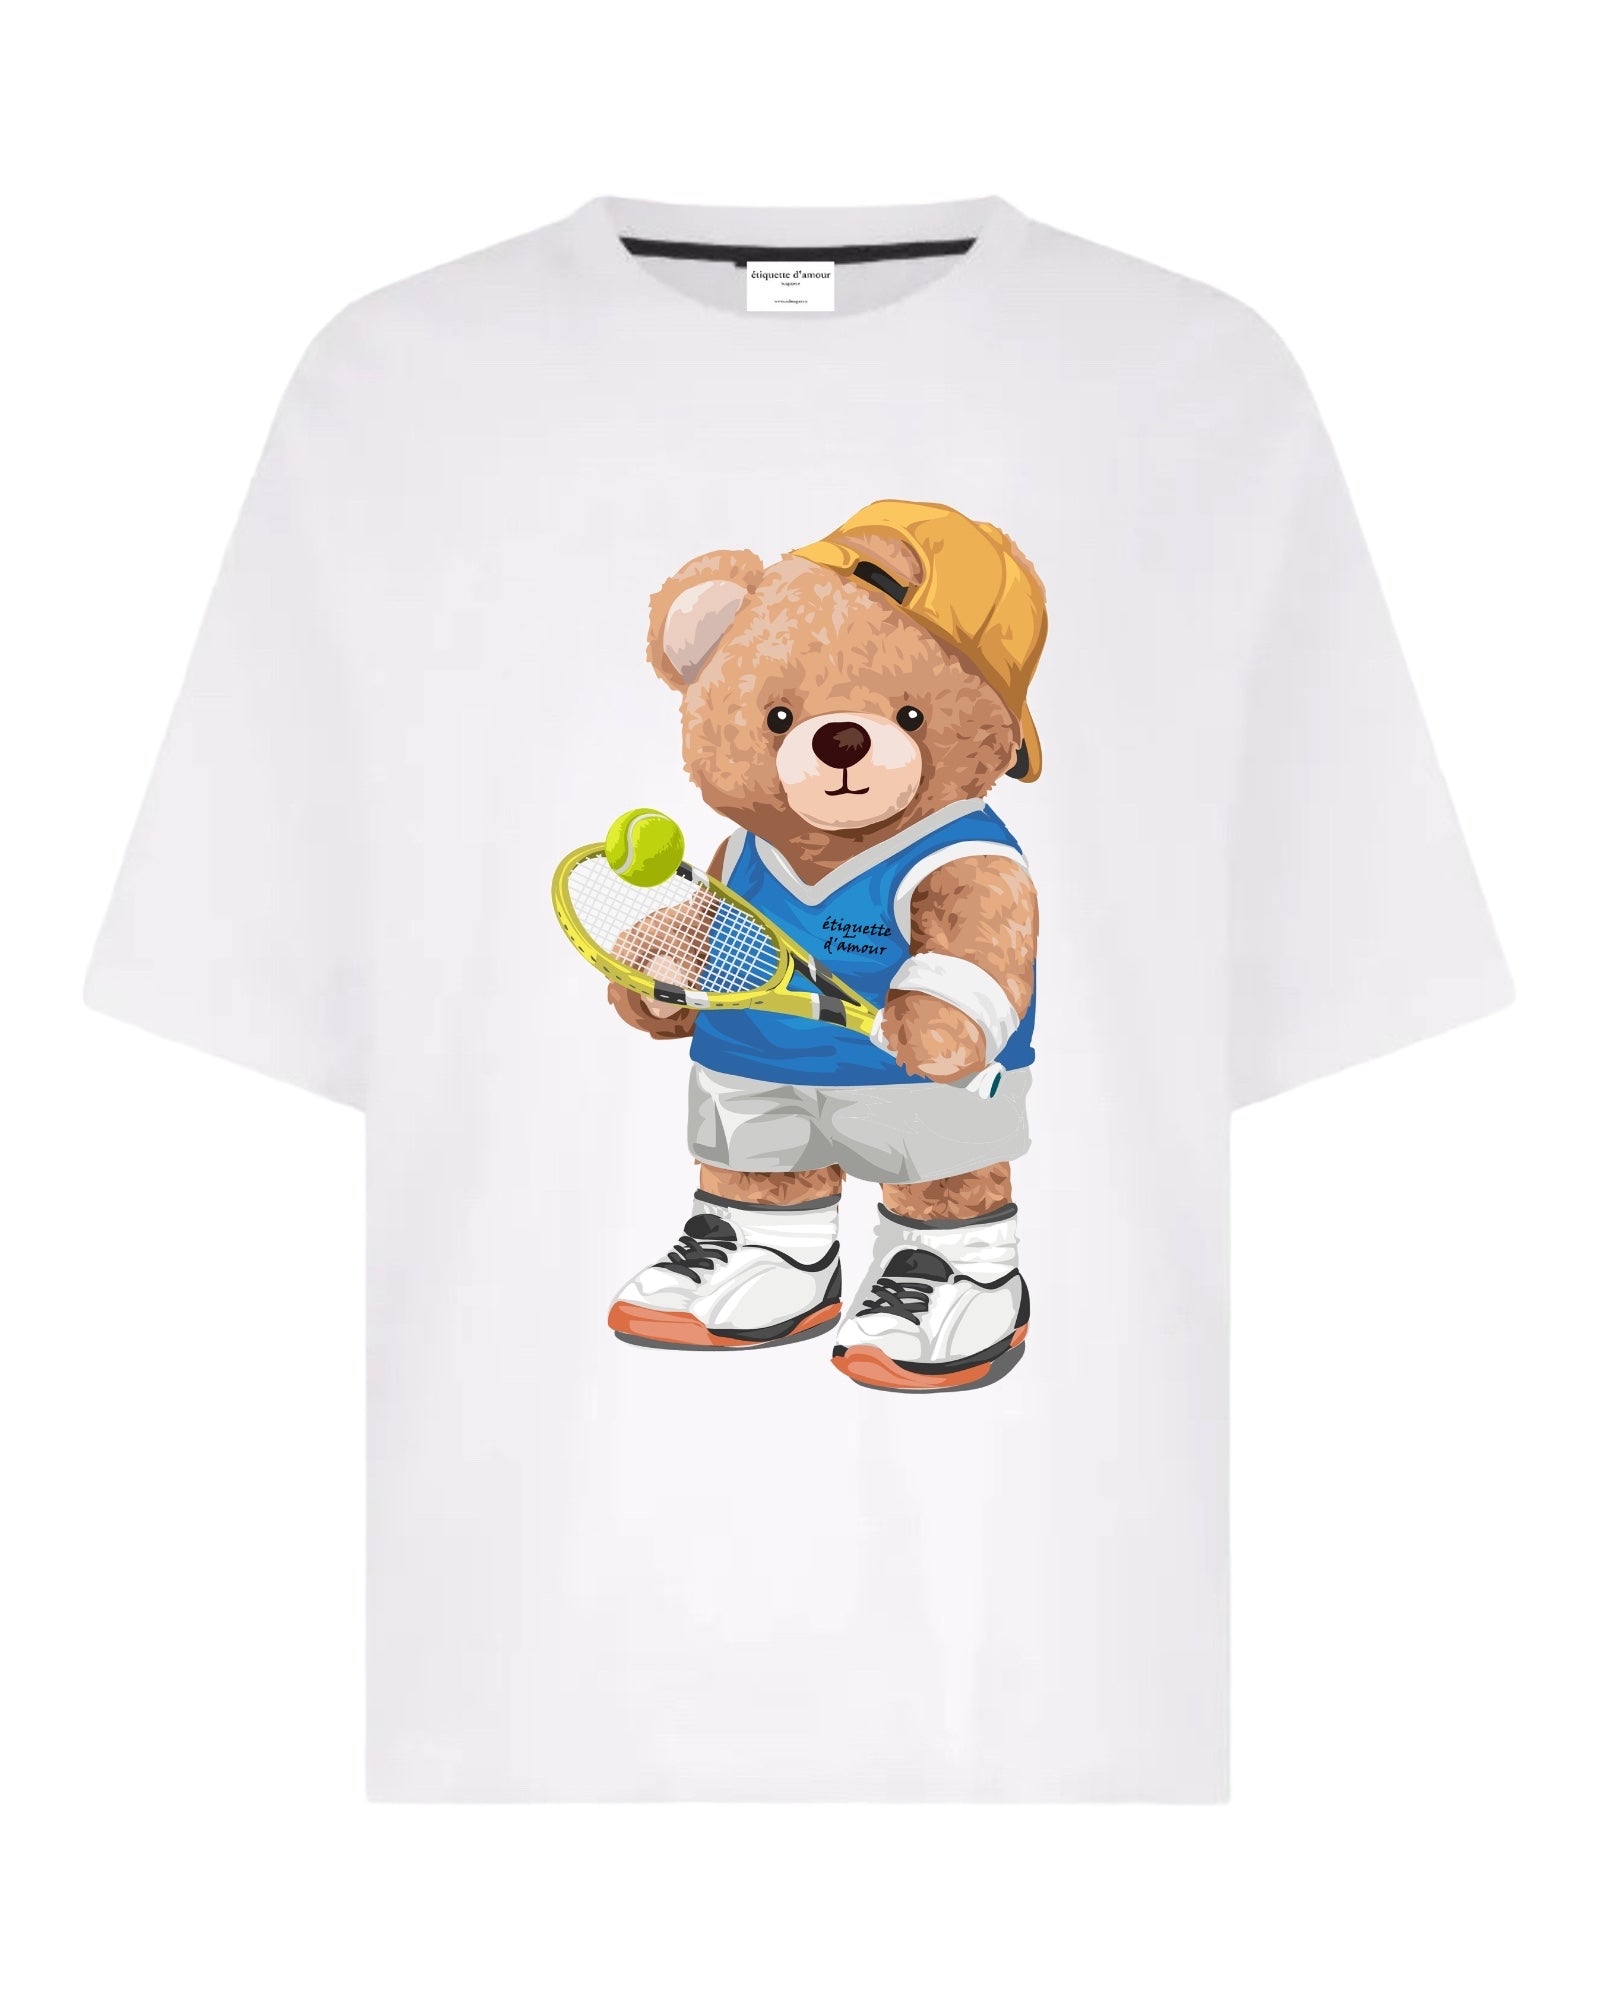 XLuxe T-Shirt #0056